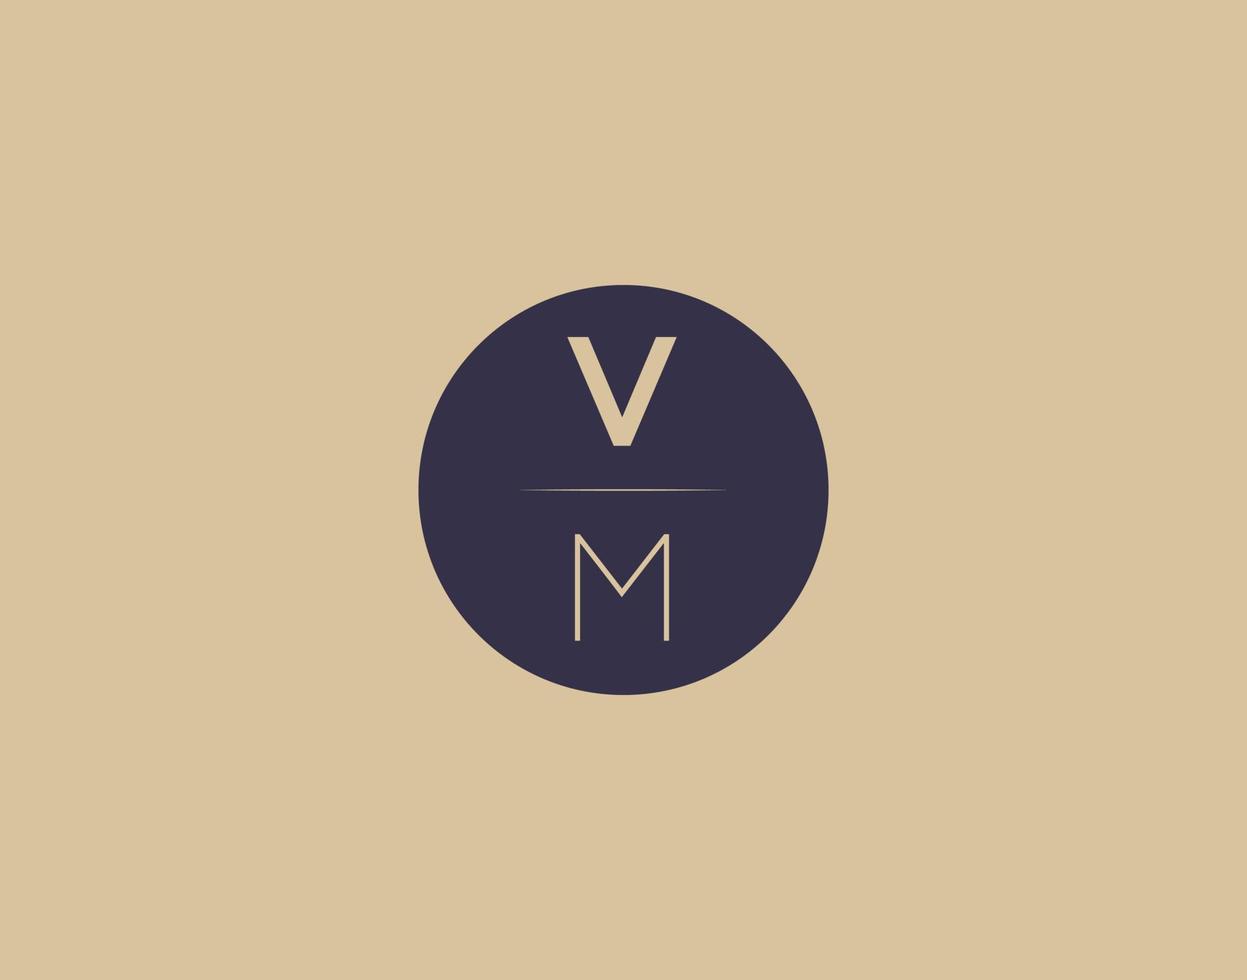 imagens vetoriais de design de logotipo moderno e elegante de carta vm vetor